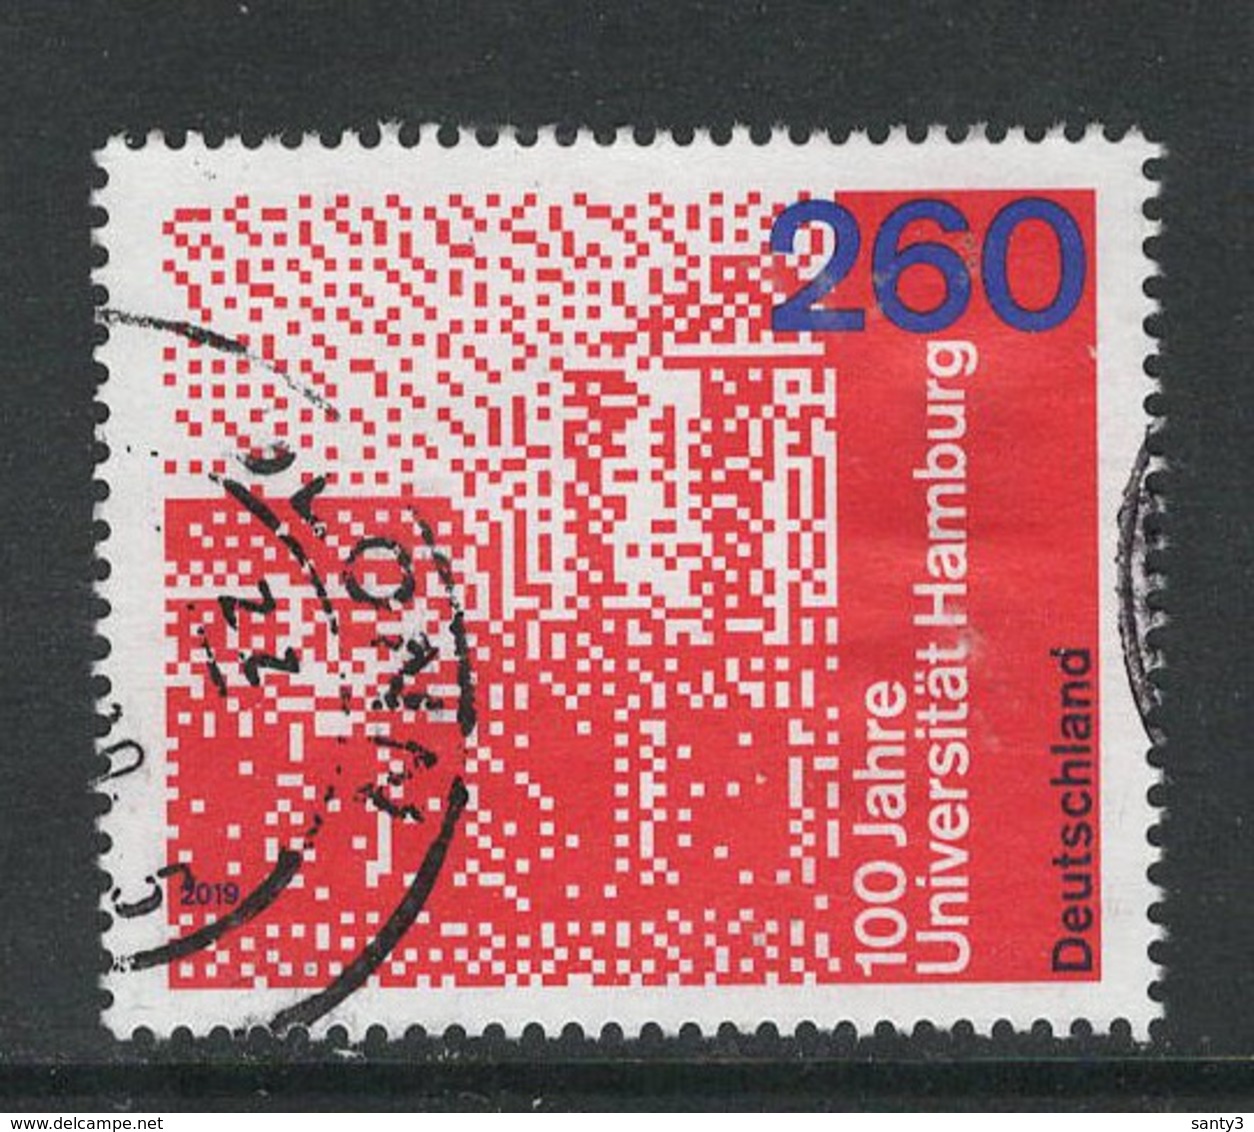 Duitsland, Mi 3467 Jaar 2019, Hoge Waarde,  Gestempeld - Used Stamps